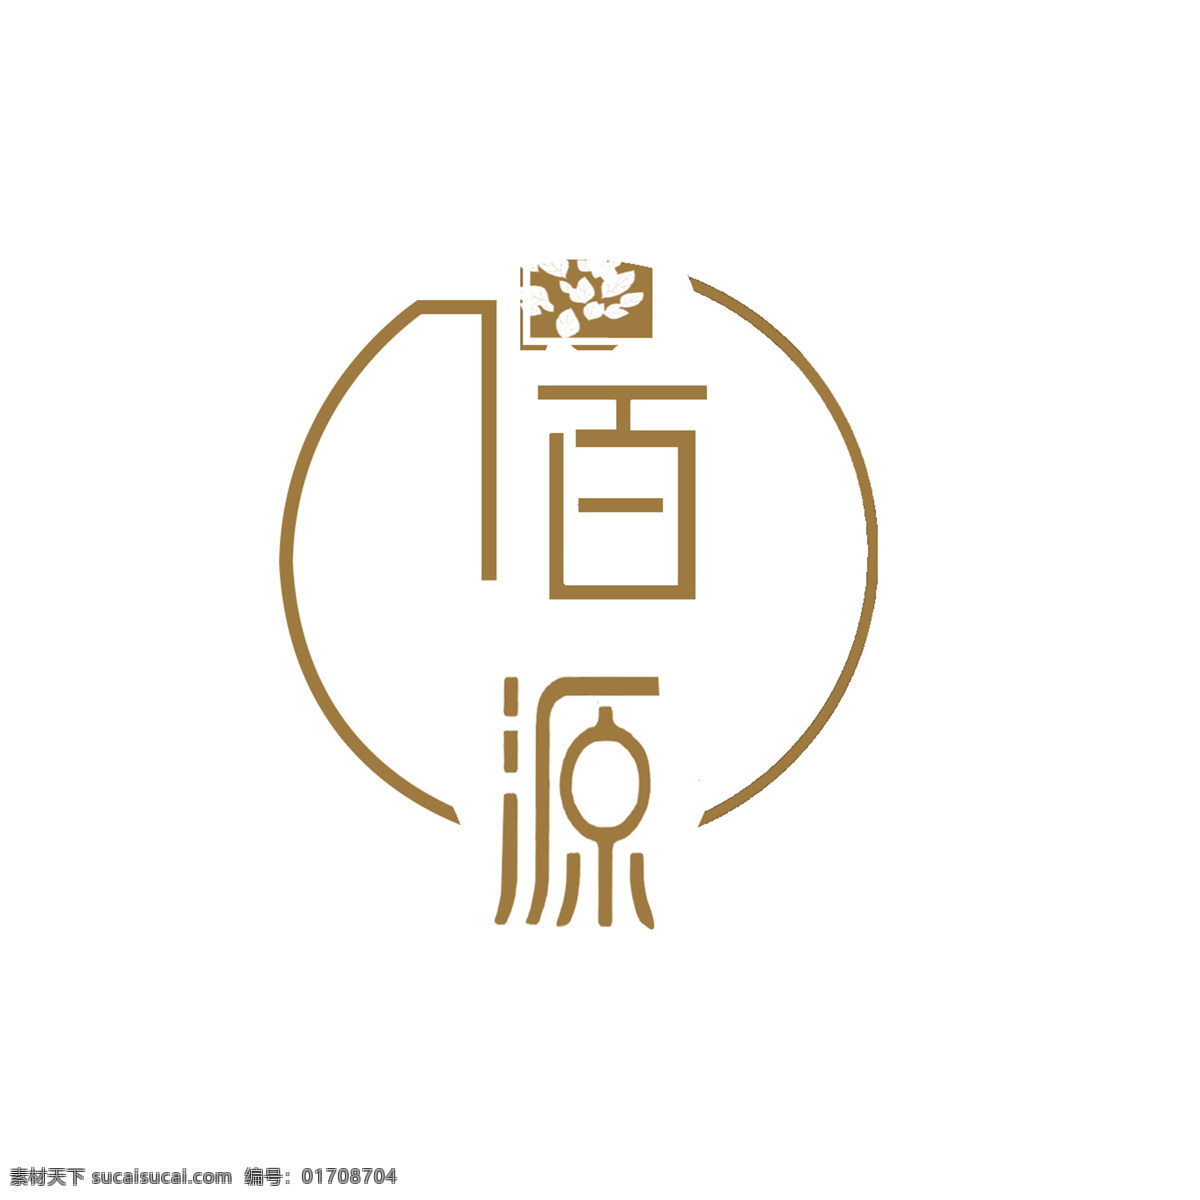 佰 源 logo 字体 佰源 logo设计 标志图标 logo标志 企业 标志